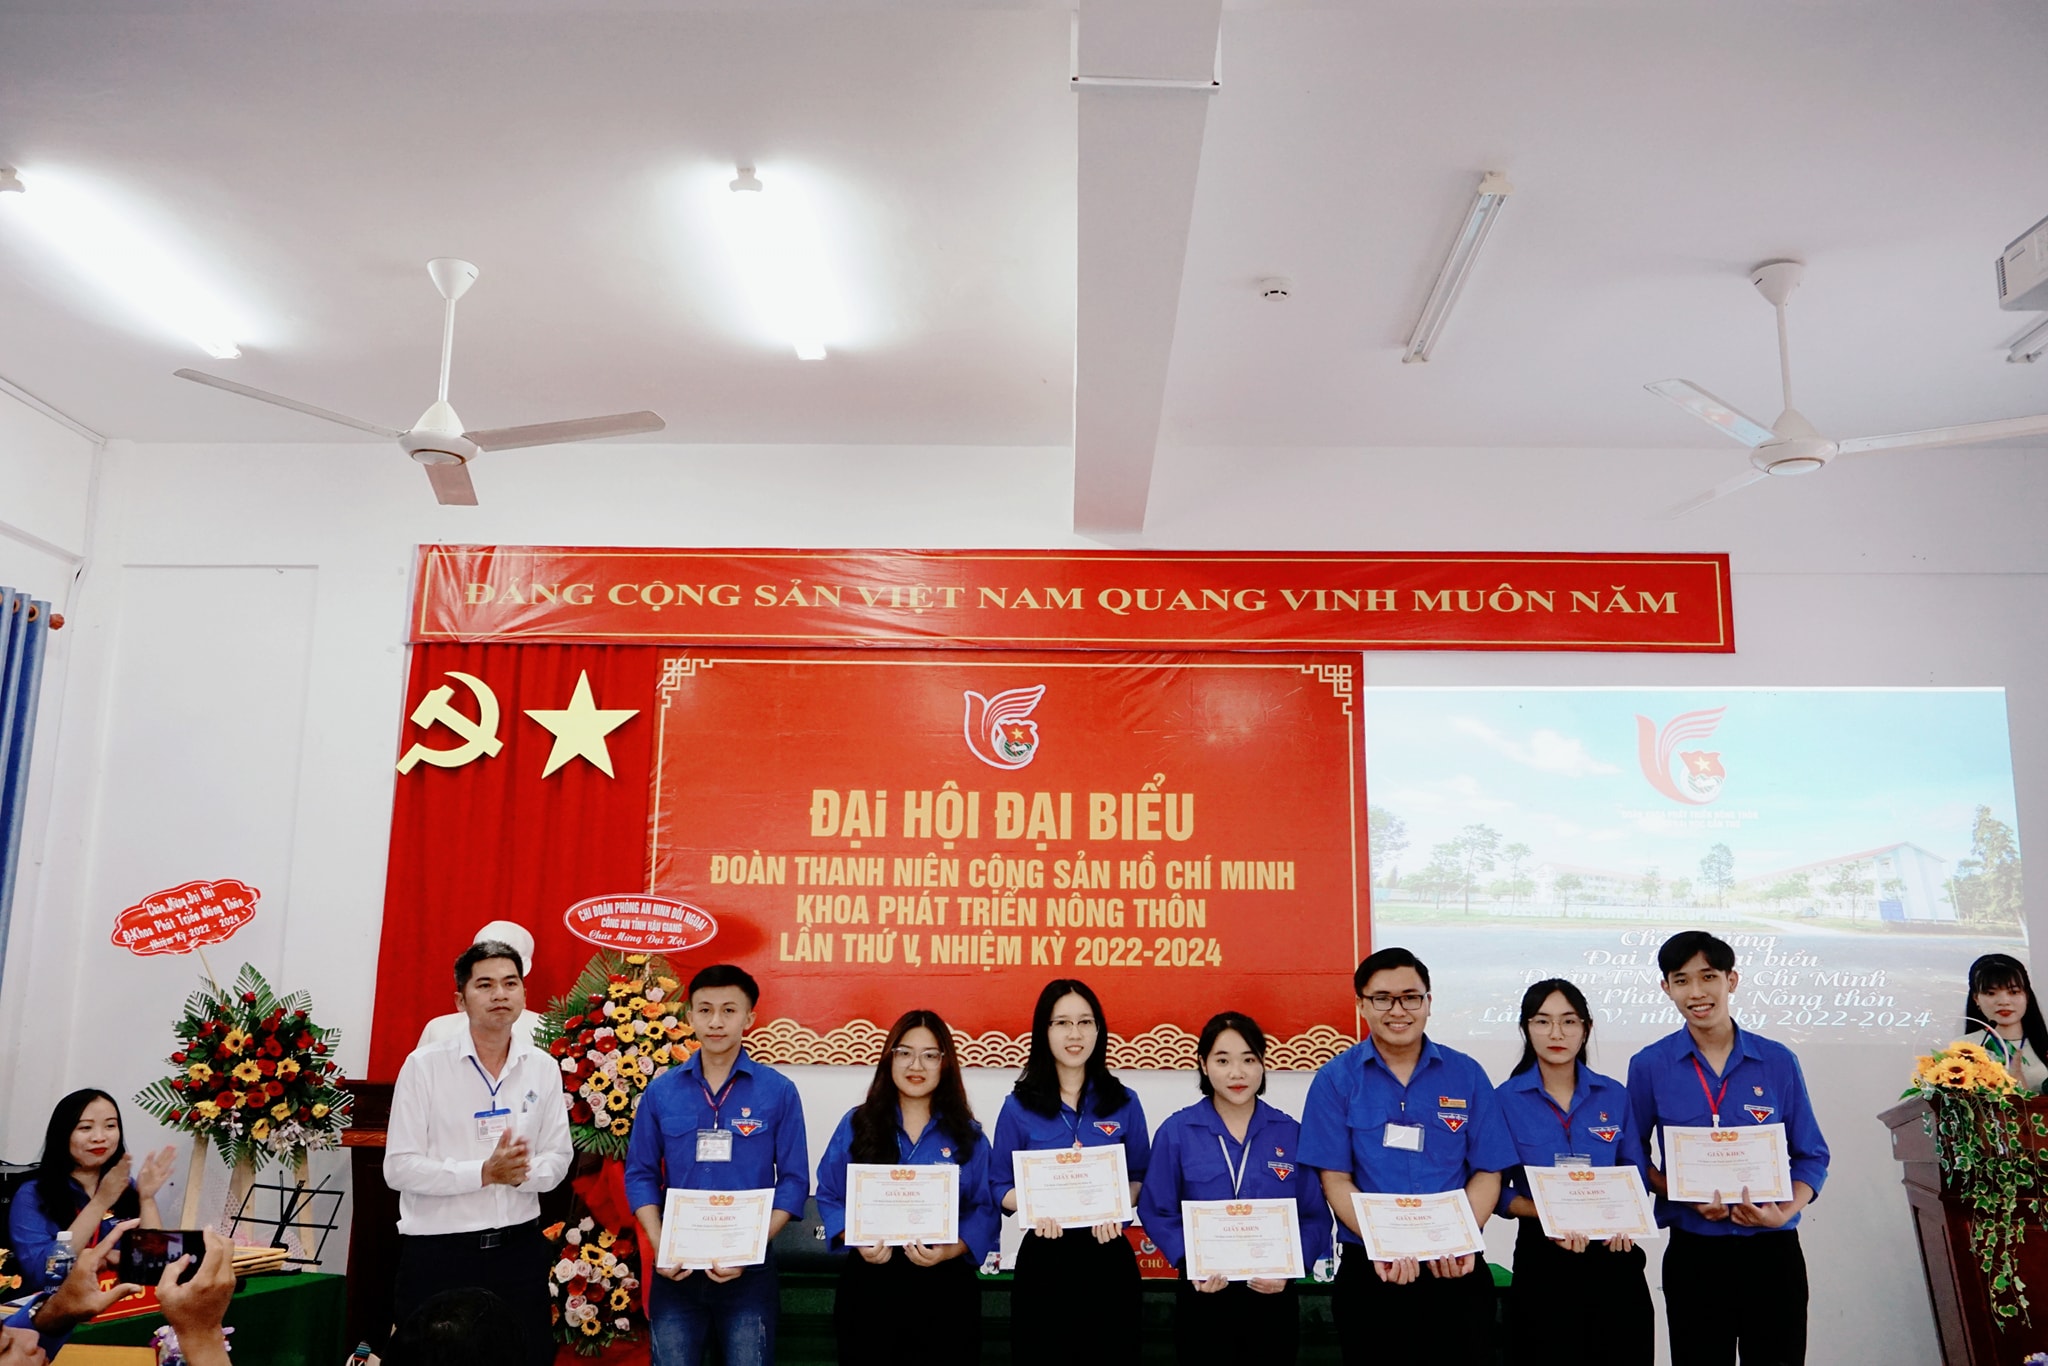 TS Nguyễn Thiết trao giấy khen Đoàn Khoa cho các cá nhân hỗ trợ tốt hoạt động Đoàn Khoa